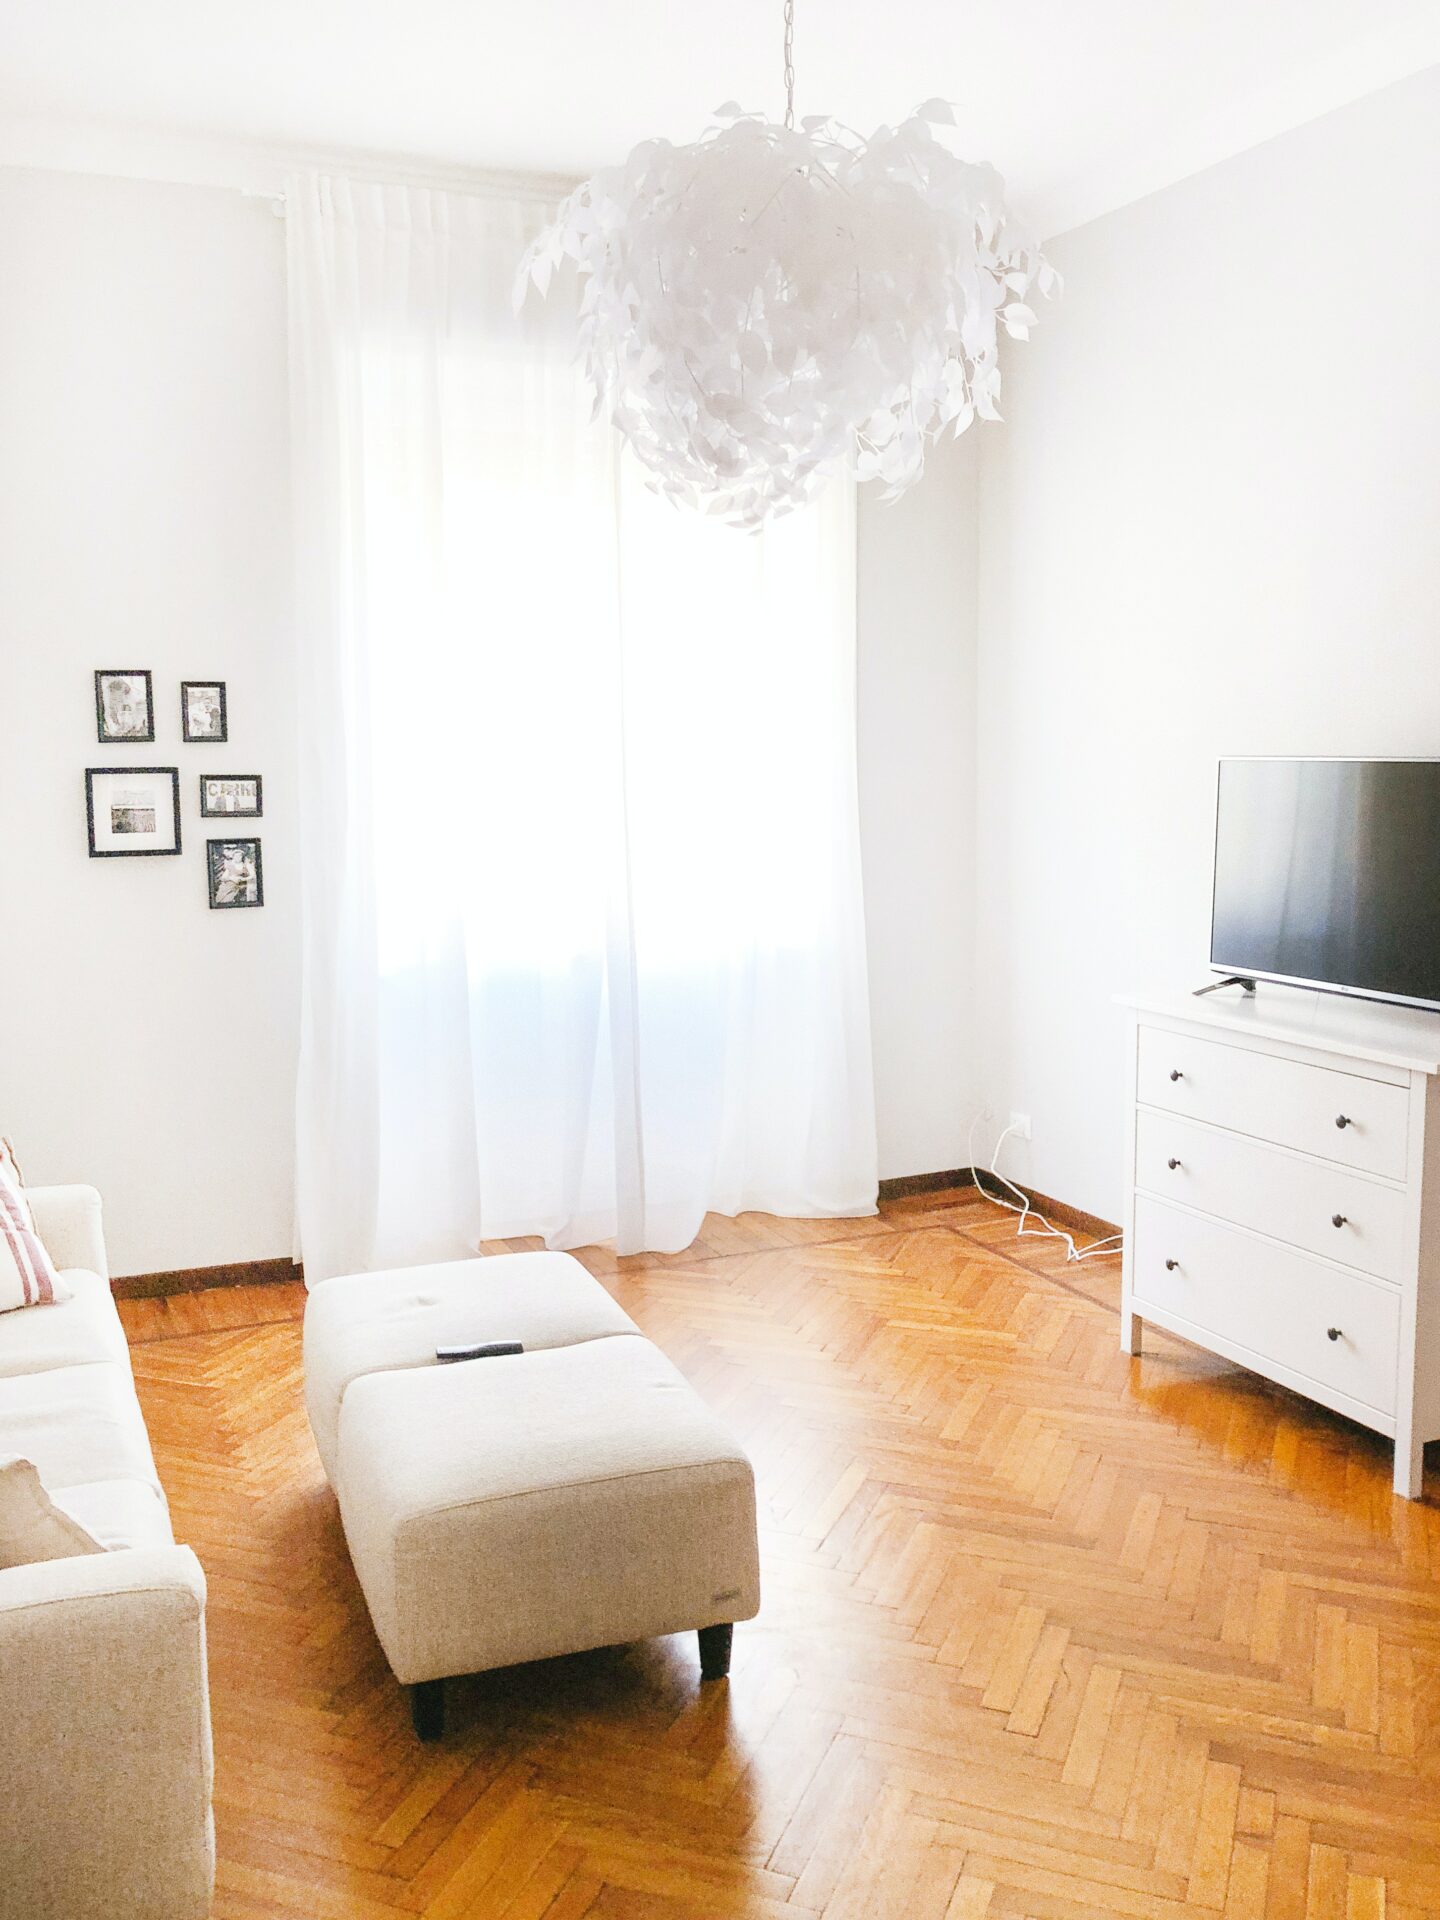 Hvidt rum og et lyst trægulv med hvide møbler 